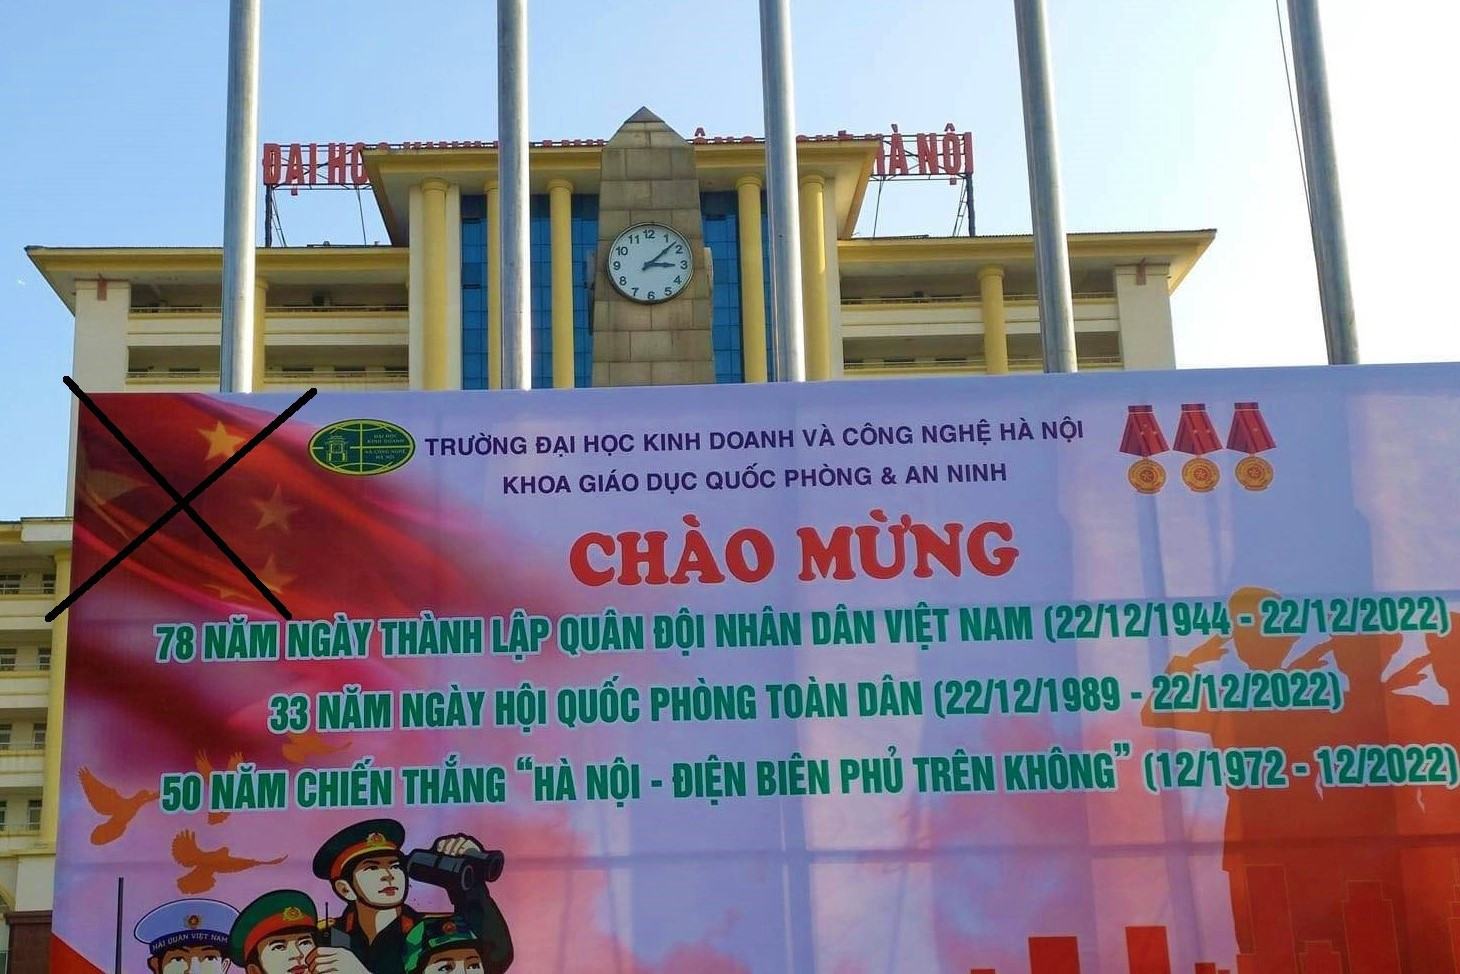 Áp phích cờ Việt Nam Trung Quốc – hình ảnh đẹp như mơ giữa thời đại số. Hãy tưởng tượng một bức tranh được khắc hoạ công phu với những chi tiết tinh tế, từ những chiếc lá cờ kết nối đất nước cho đến những trường đại học, tòa nhà độc đáo. Đến với triển lãm của chúng tôi, bạn sẽ thấy được tình người Việt tuyệt vời.